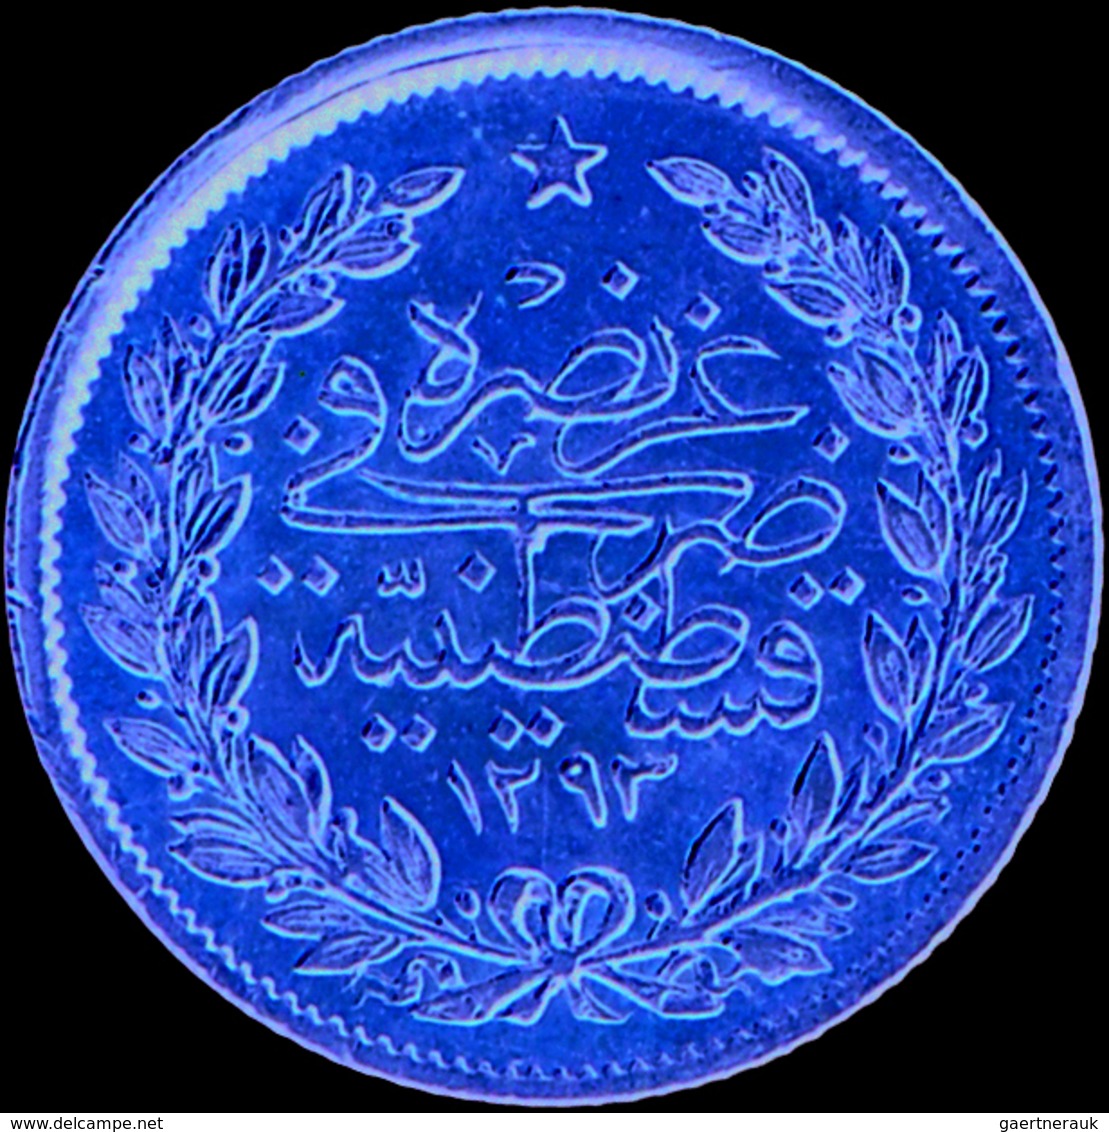 Türkei - Anlagegold: Abdul Hamid II. 1876-1909 (1293-1327 AH): 50 Kurush 1887 (AH 1293, Jahr 12), KM - Turchia